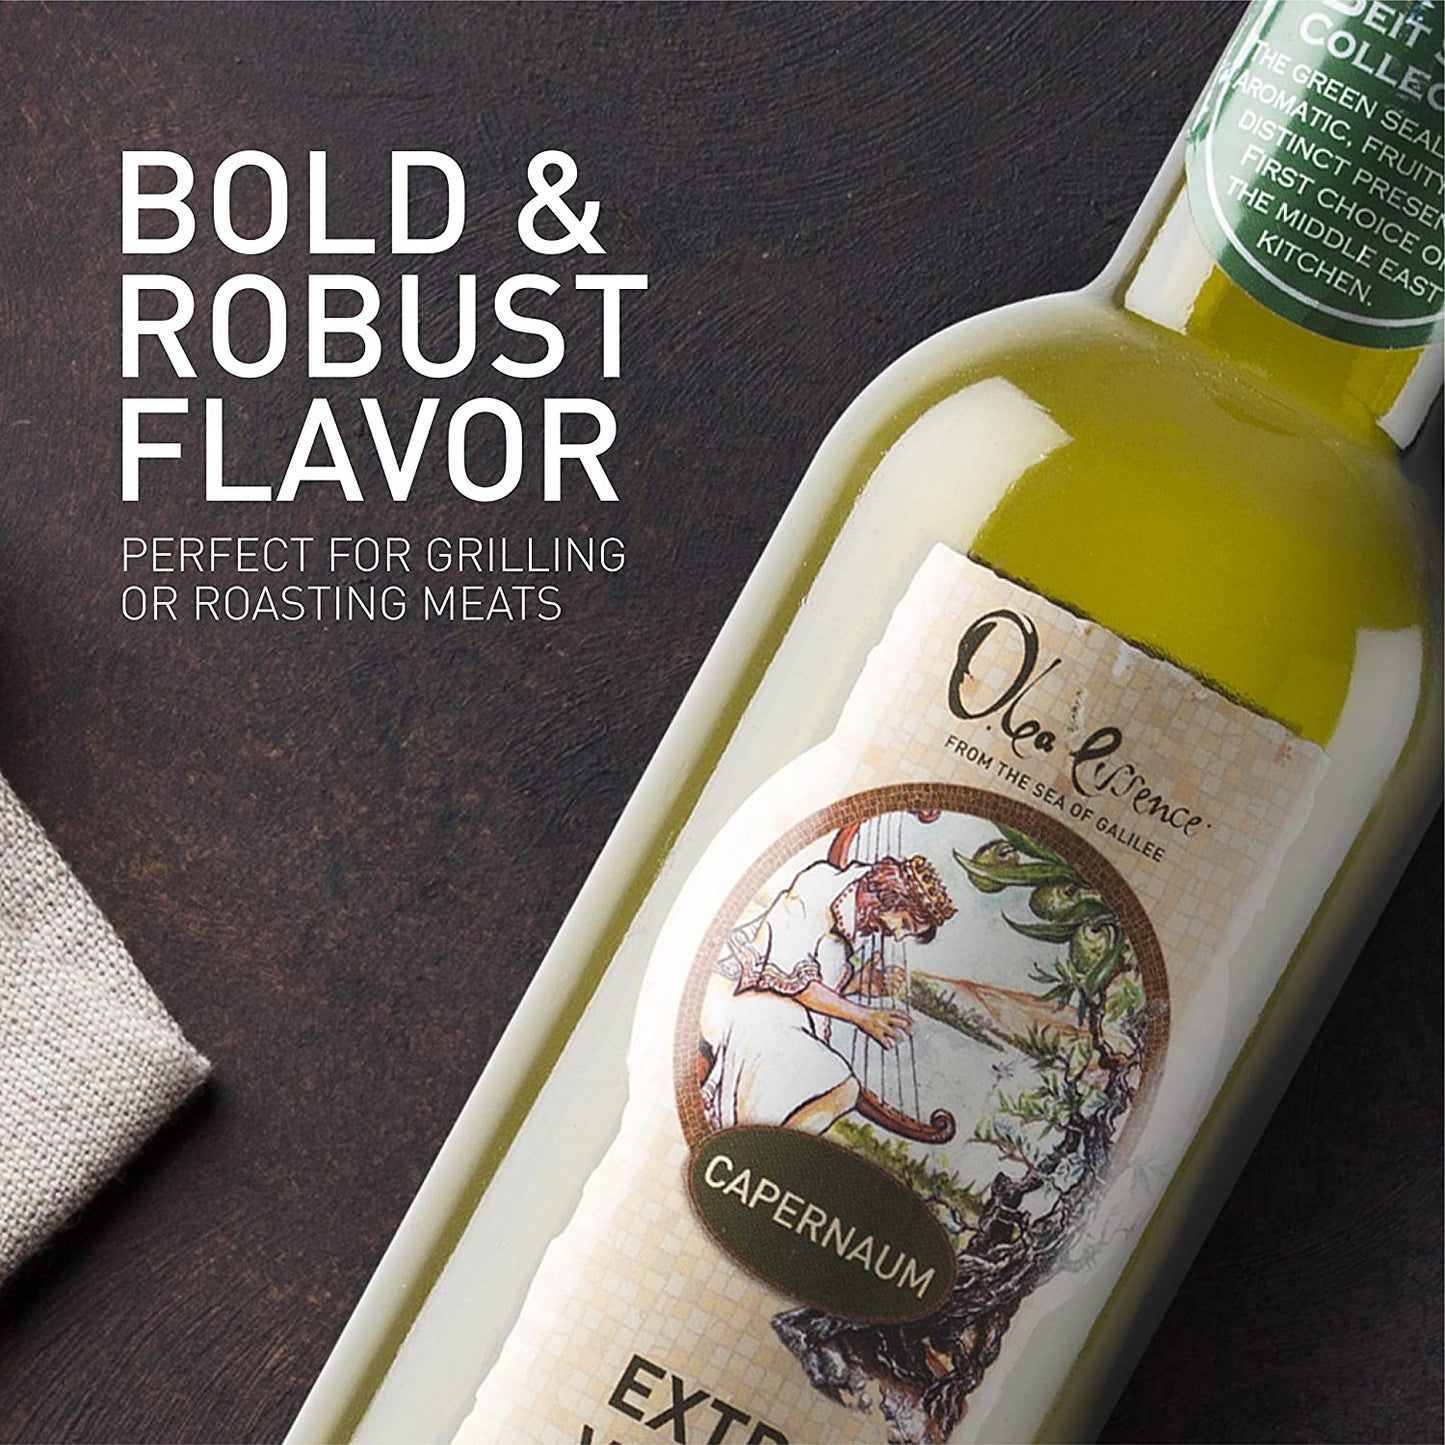 Beit Saida (Green Seal) Extra Virgin Olive Oil - Olea Essence - Israel Menu